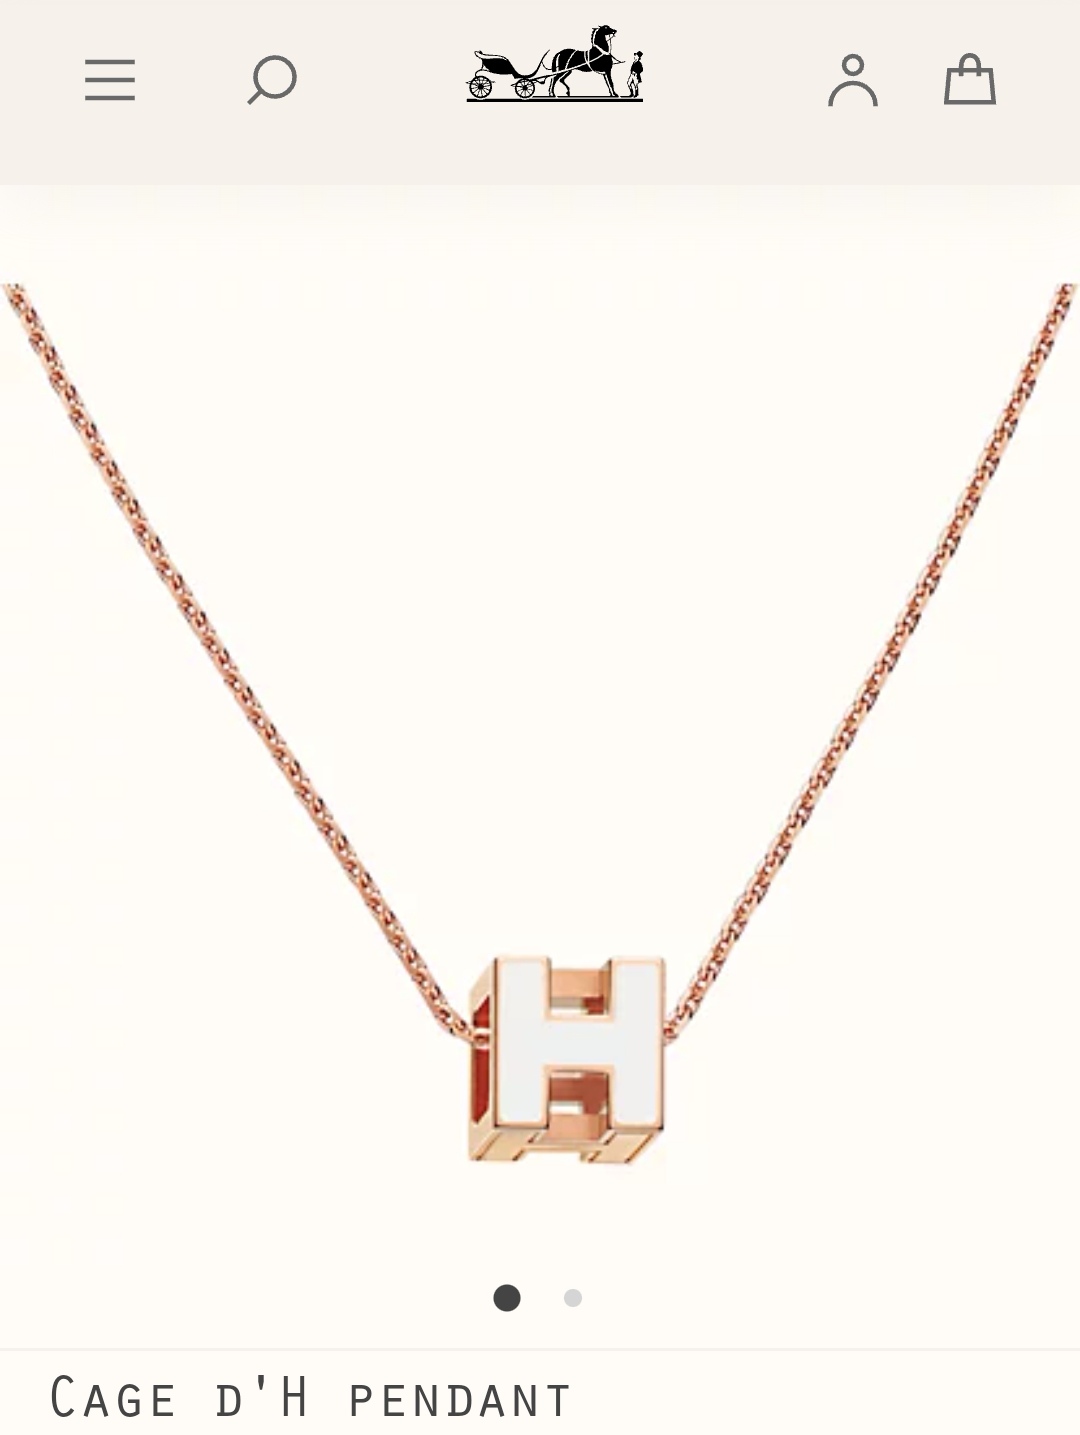 Hermes Cage d’H pendant necklace